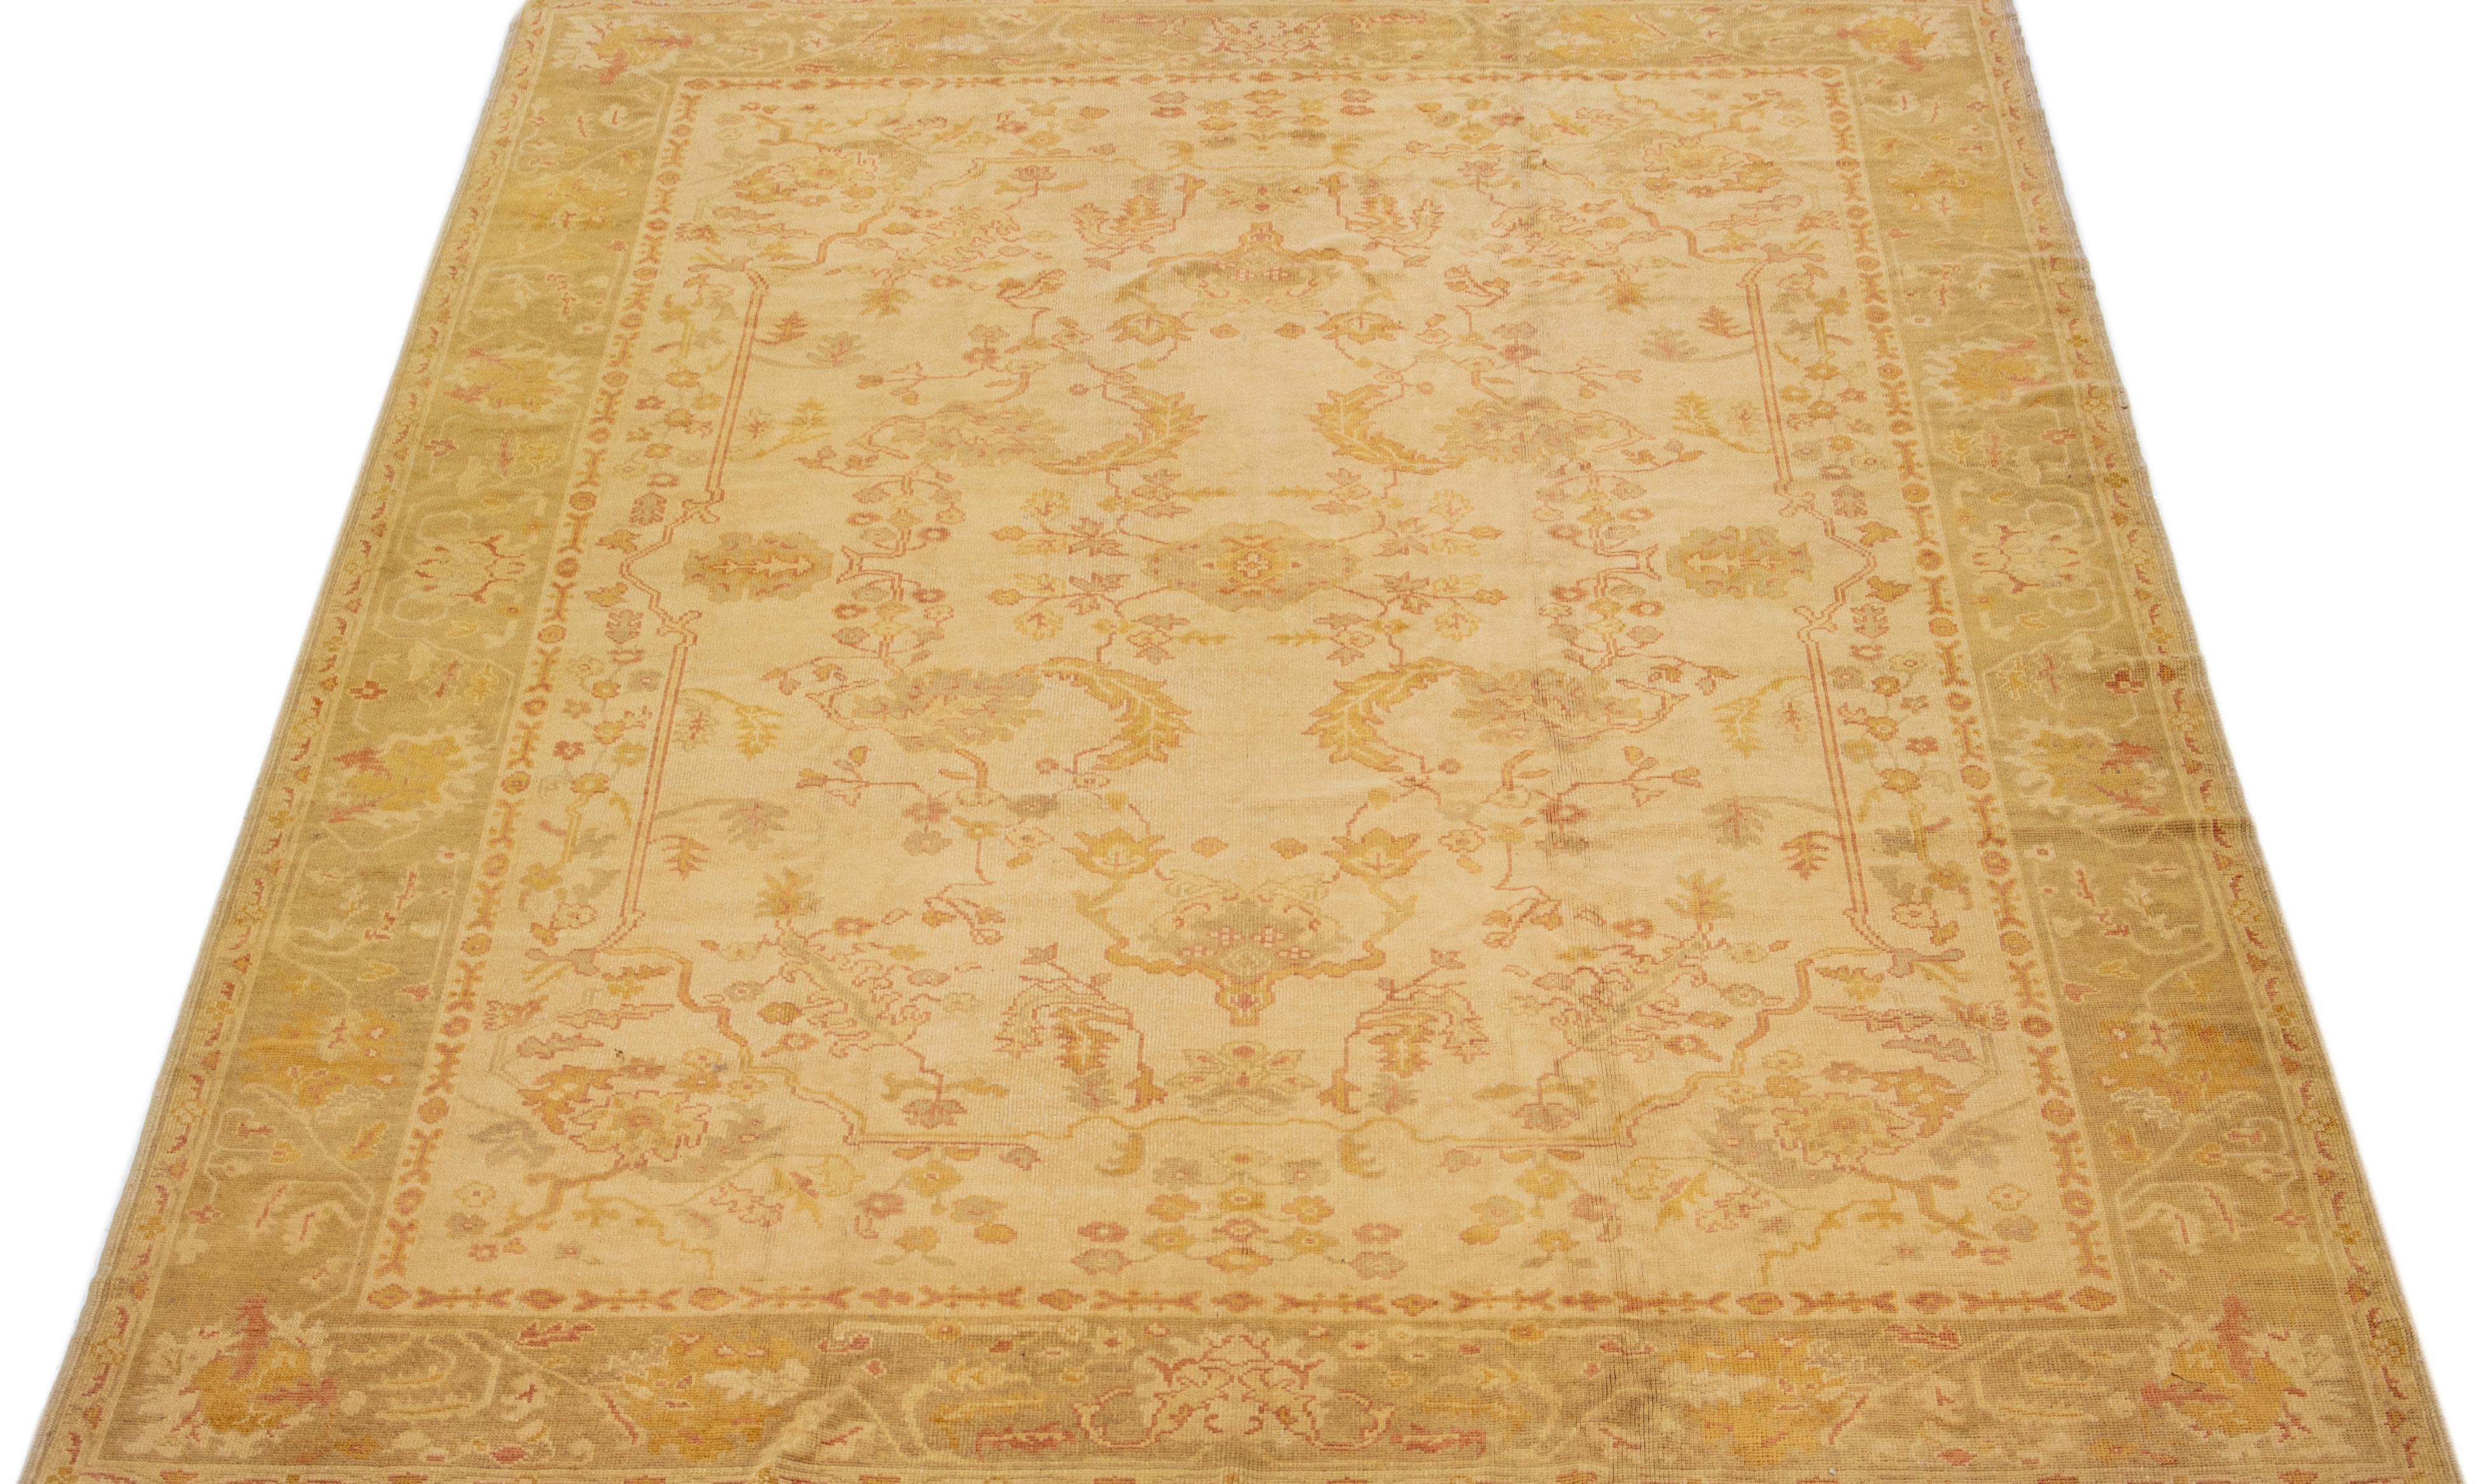 Magnifique tapis turc moderne en laine nouée à la main, avec un champ de couleur beige. Ce tapis a un cadre gris avec des accents de couleur rouille et jaune dans un magnifique motif floral géométrique.

Ce tapis mesure : 10'3